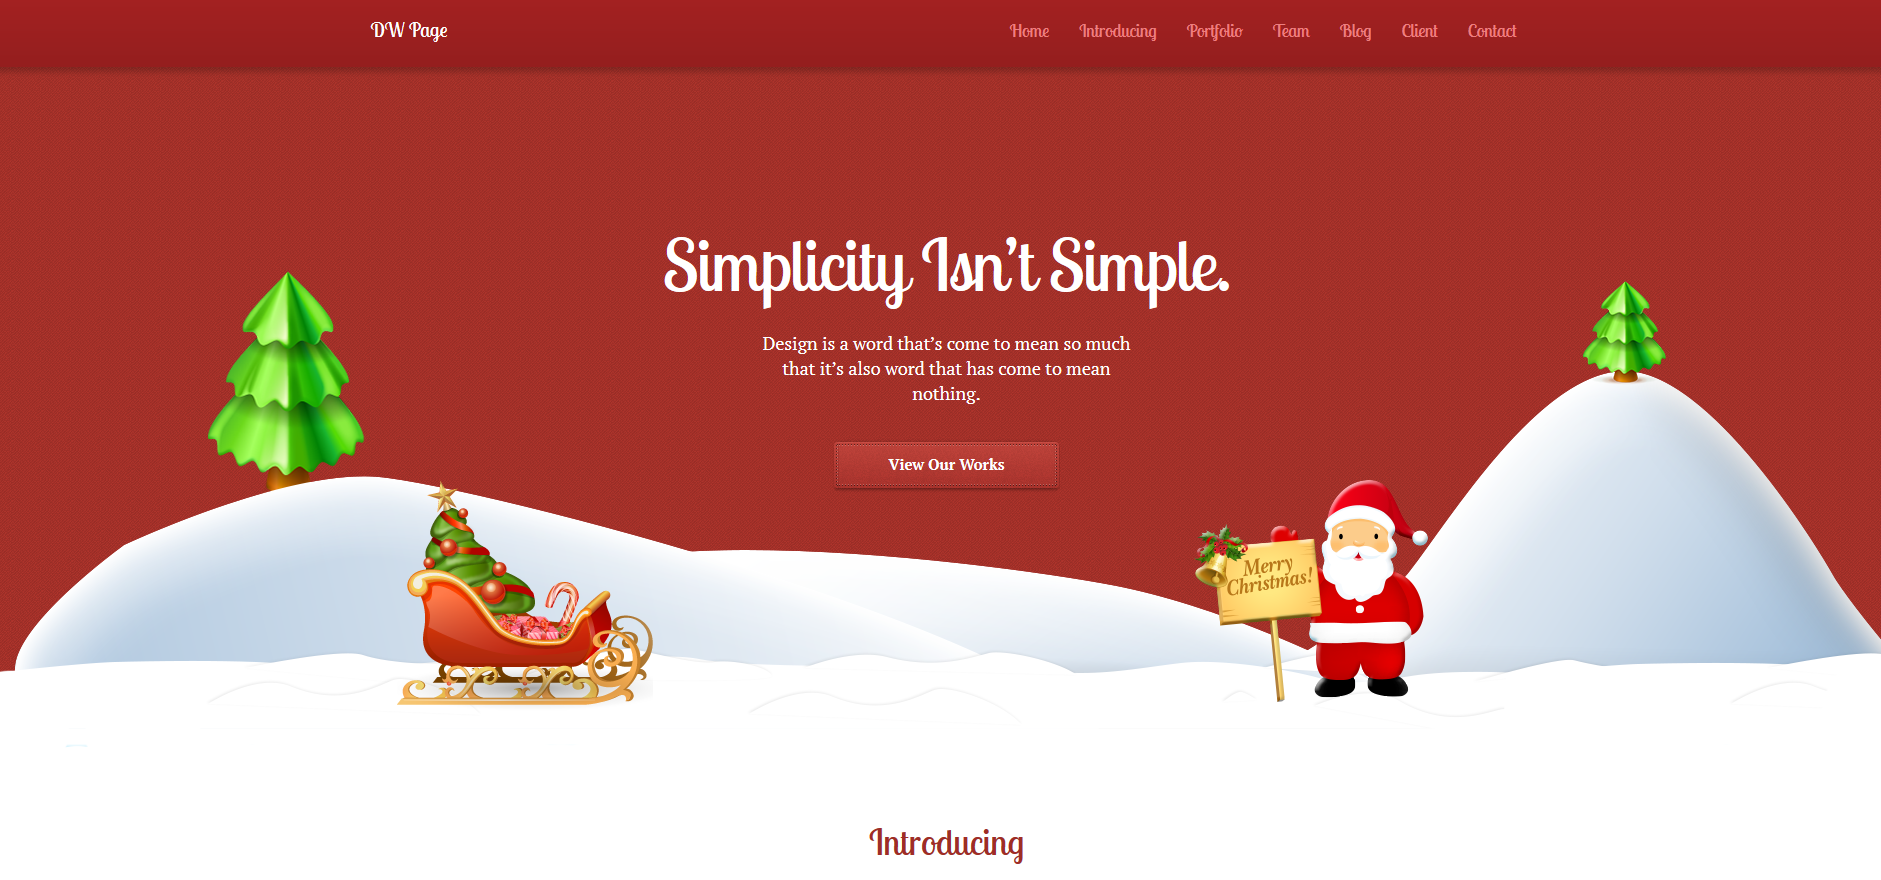 WordPress Theme DW Page Christmas